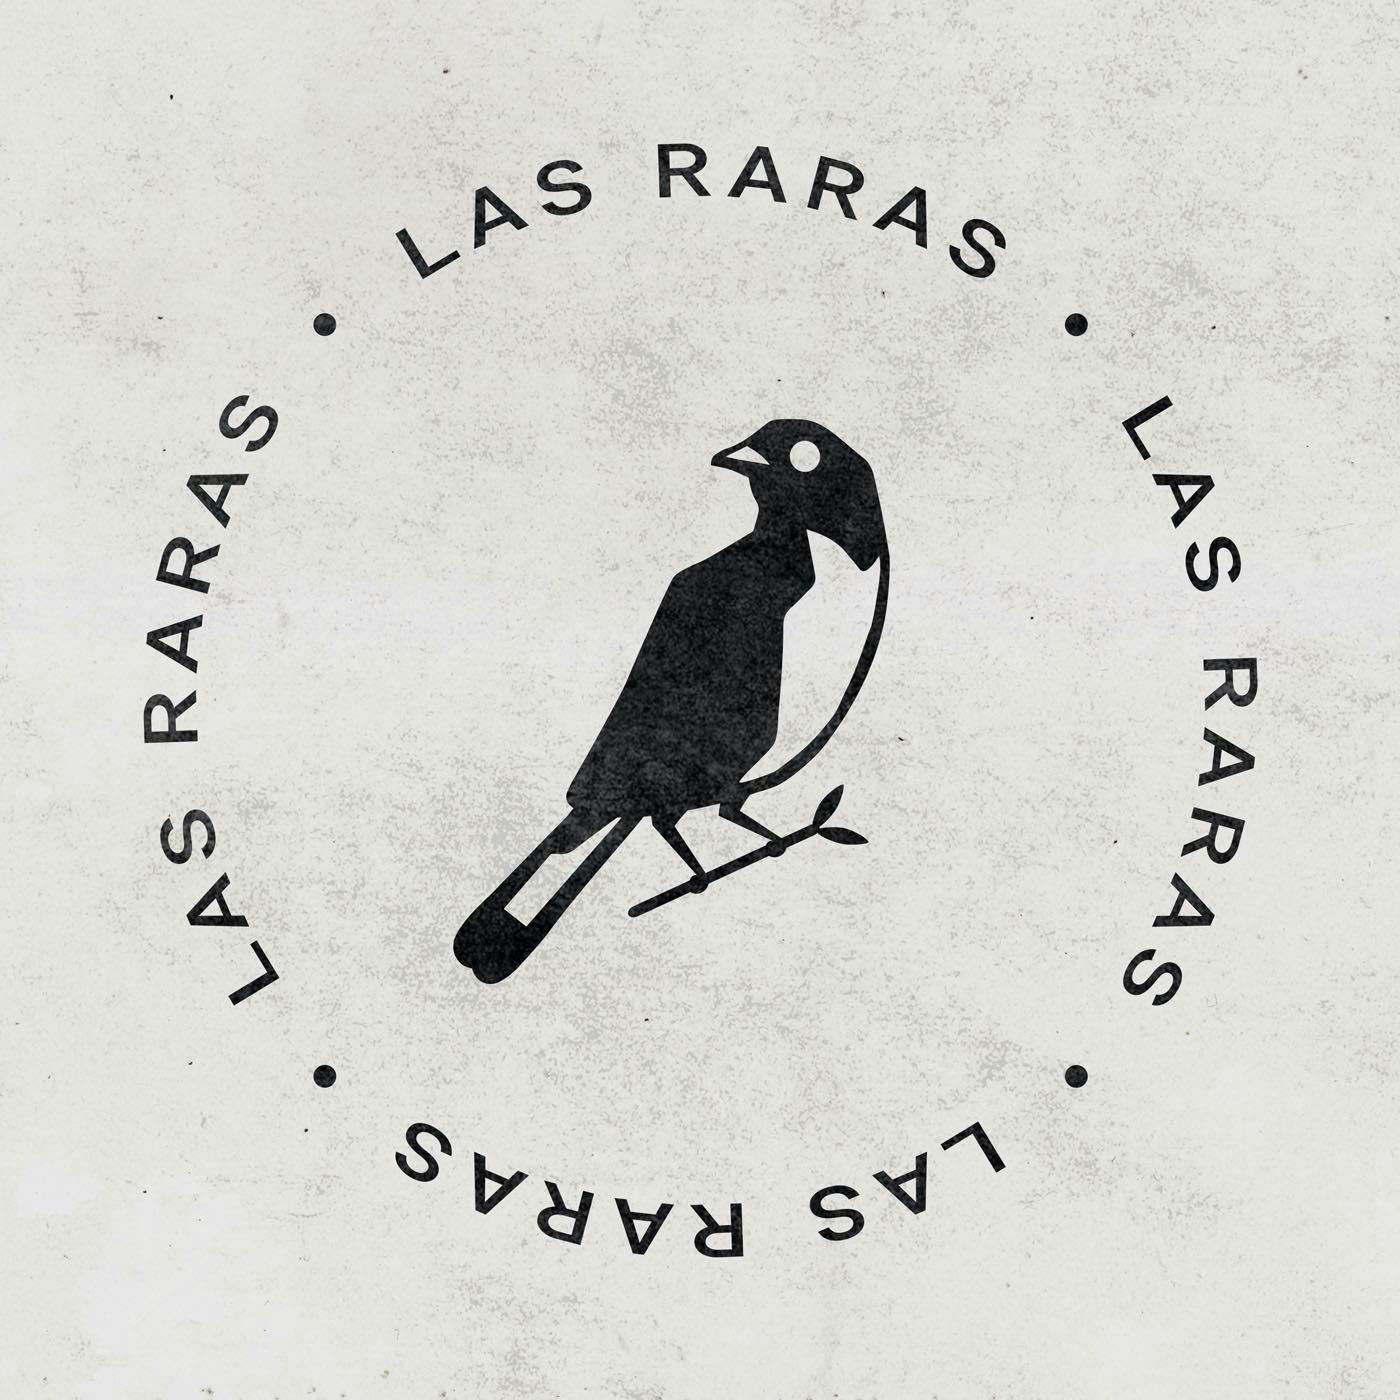 Las Raras podcast show image